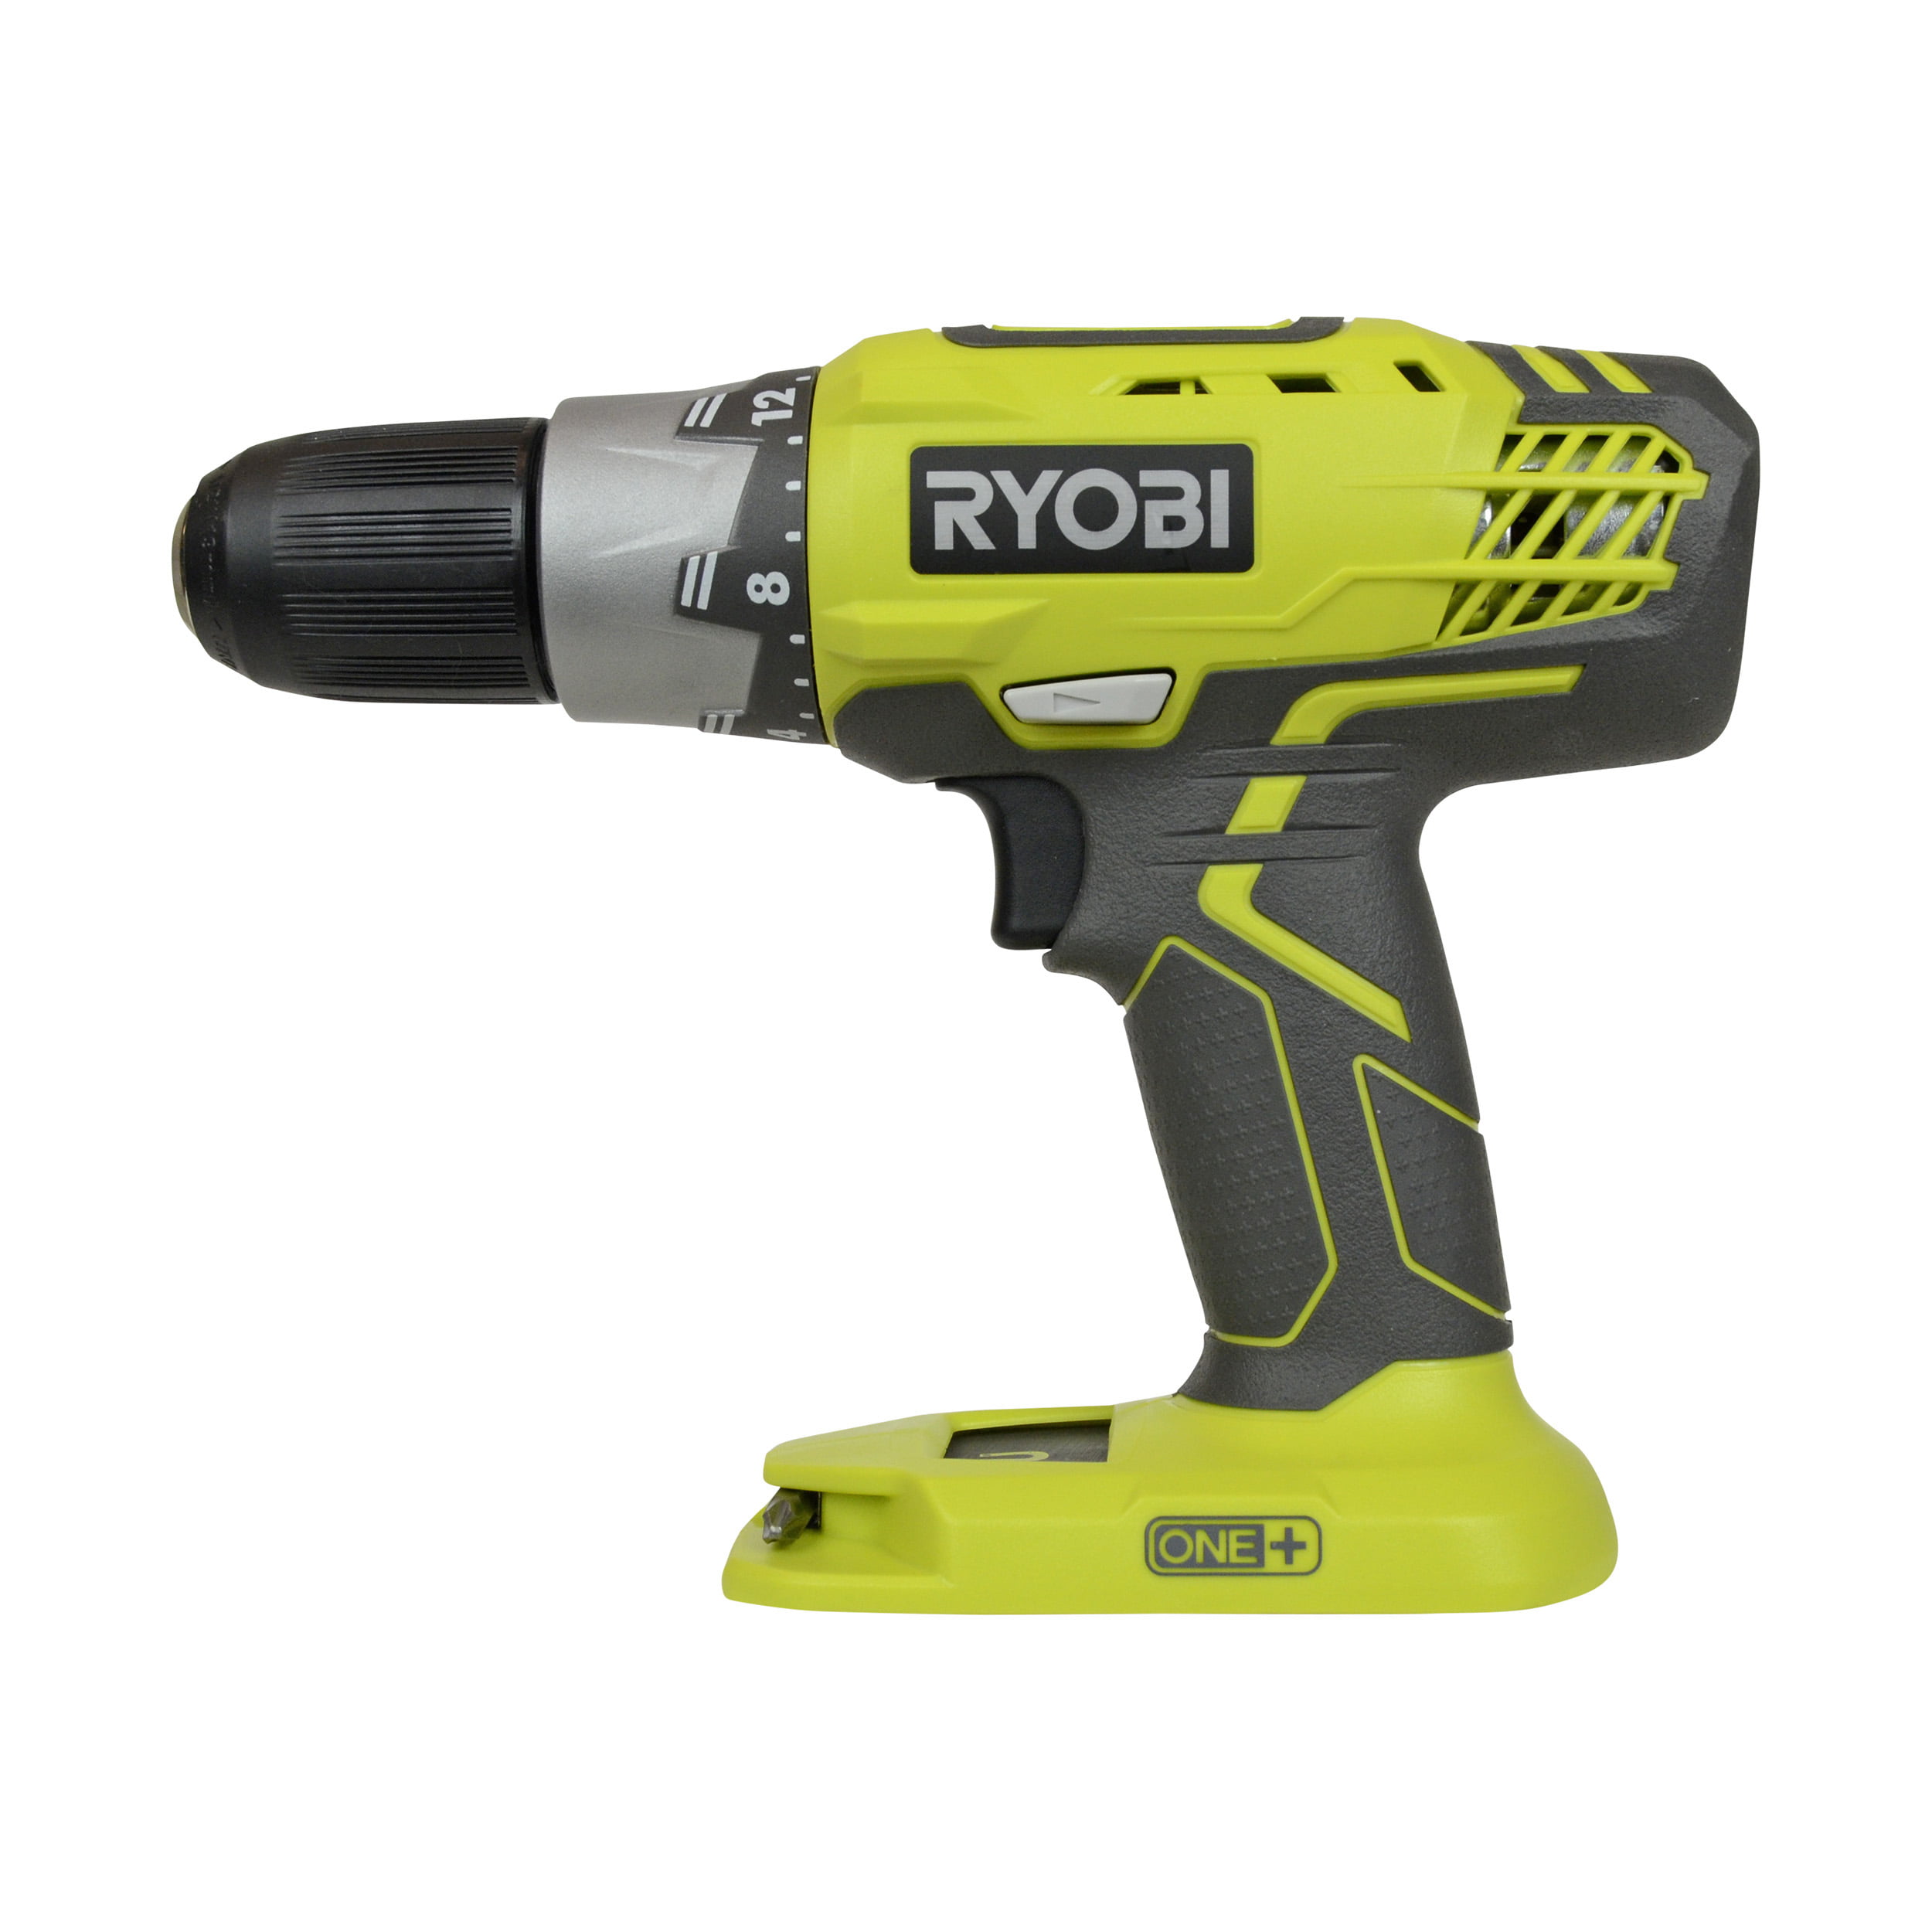 Ryobi Tools P1832 18v One Lithium Ion Cordless Drill Driver Impact Driver Kit Walmart Com Walmart Com